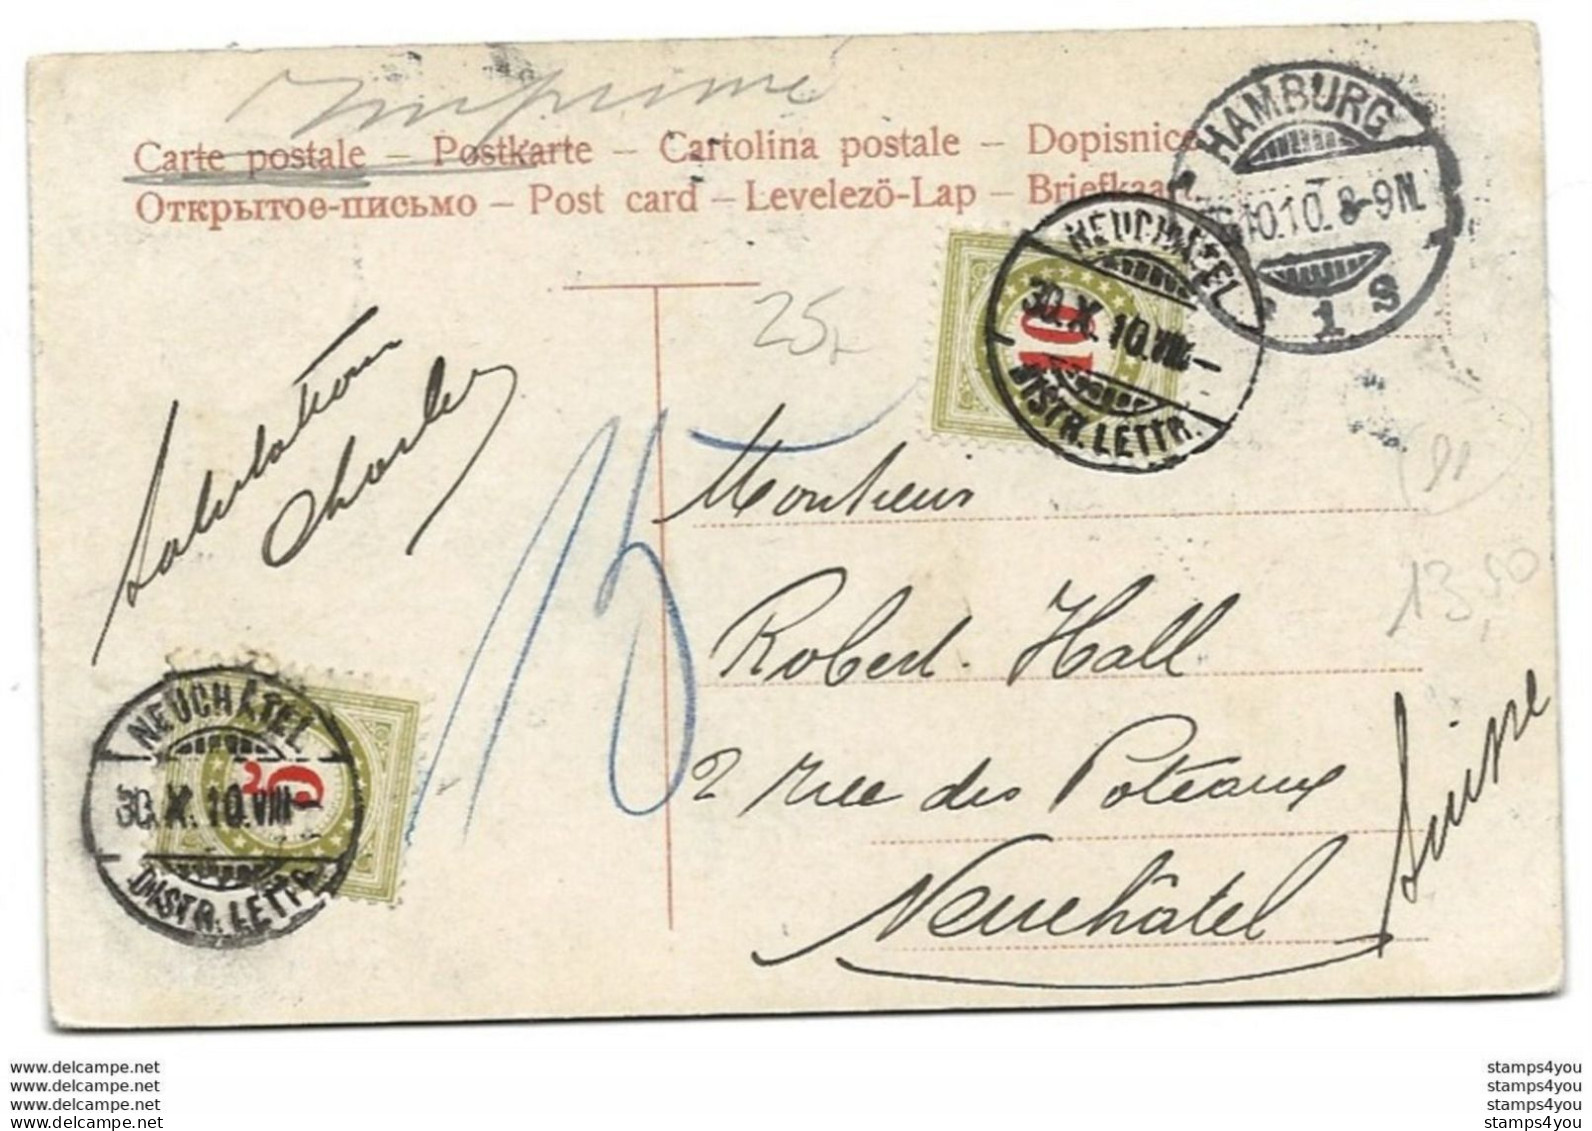 44 - 11 - Carte Envoyée De Hamburg En Suisse 1910 - 2 Timbres Suisses Taxe - Portofreiheit